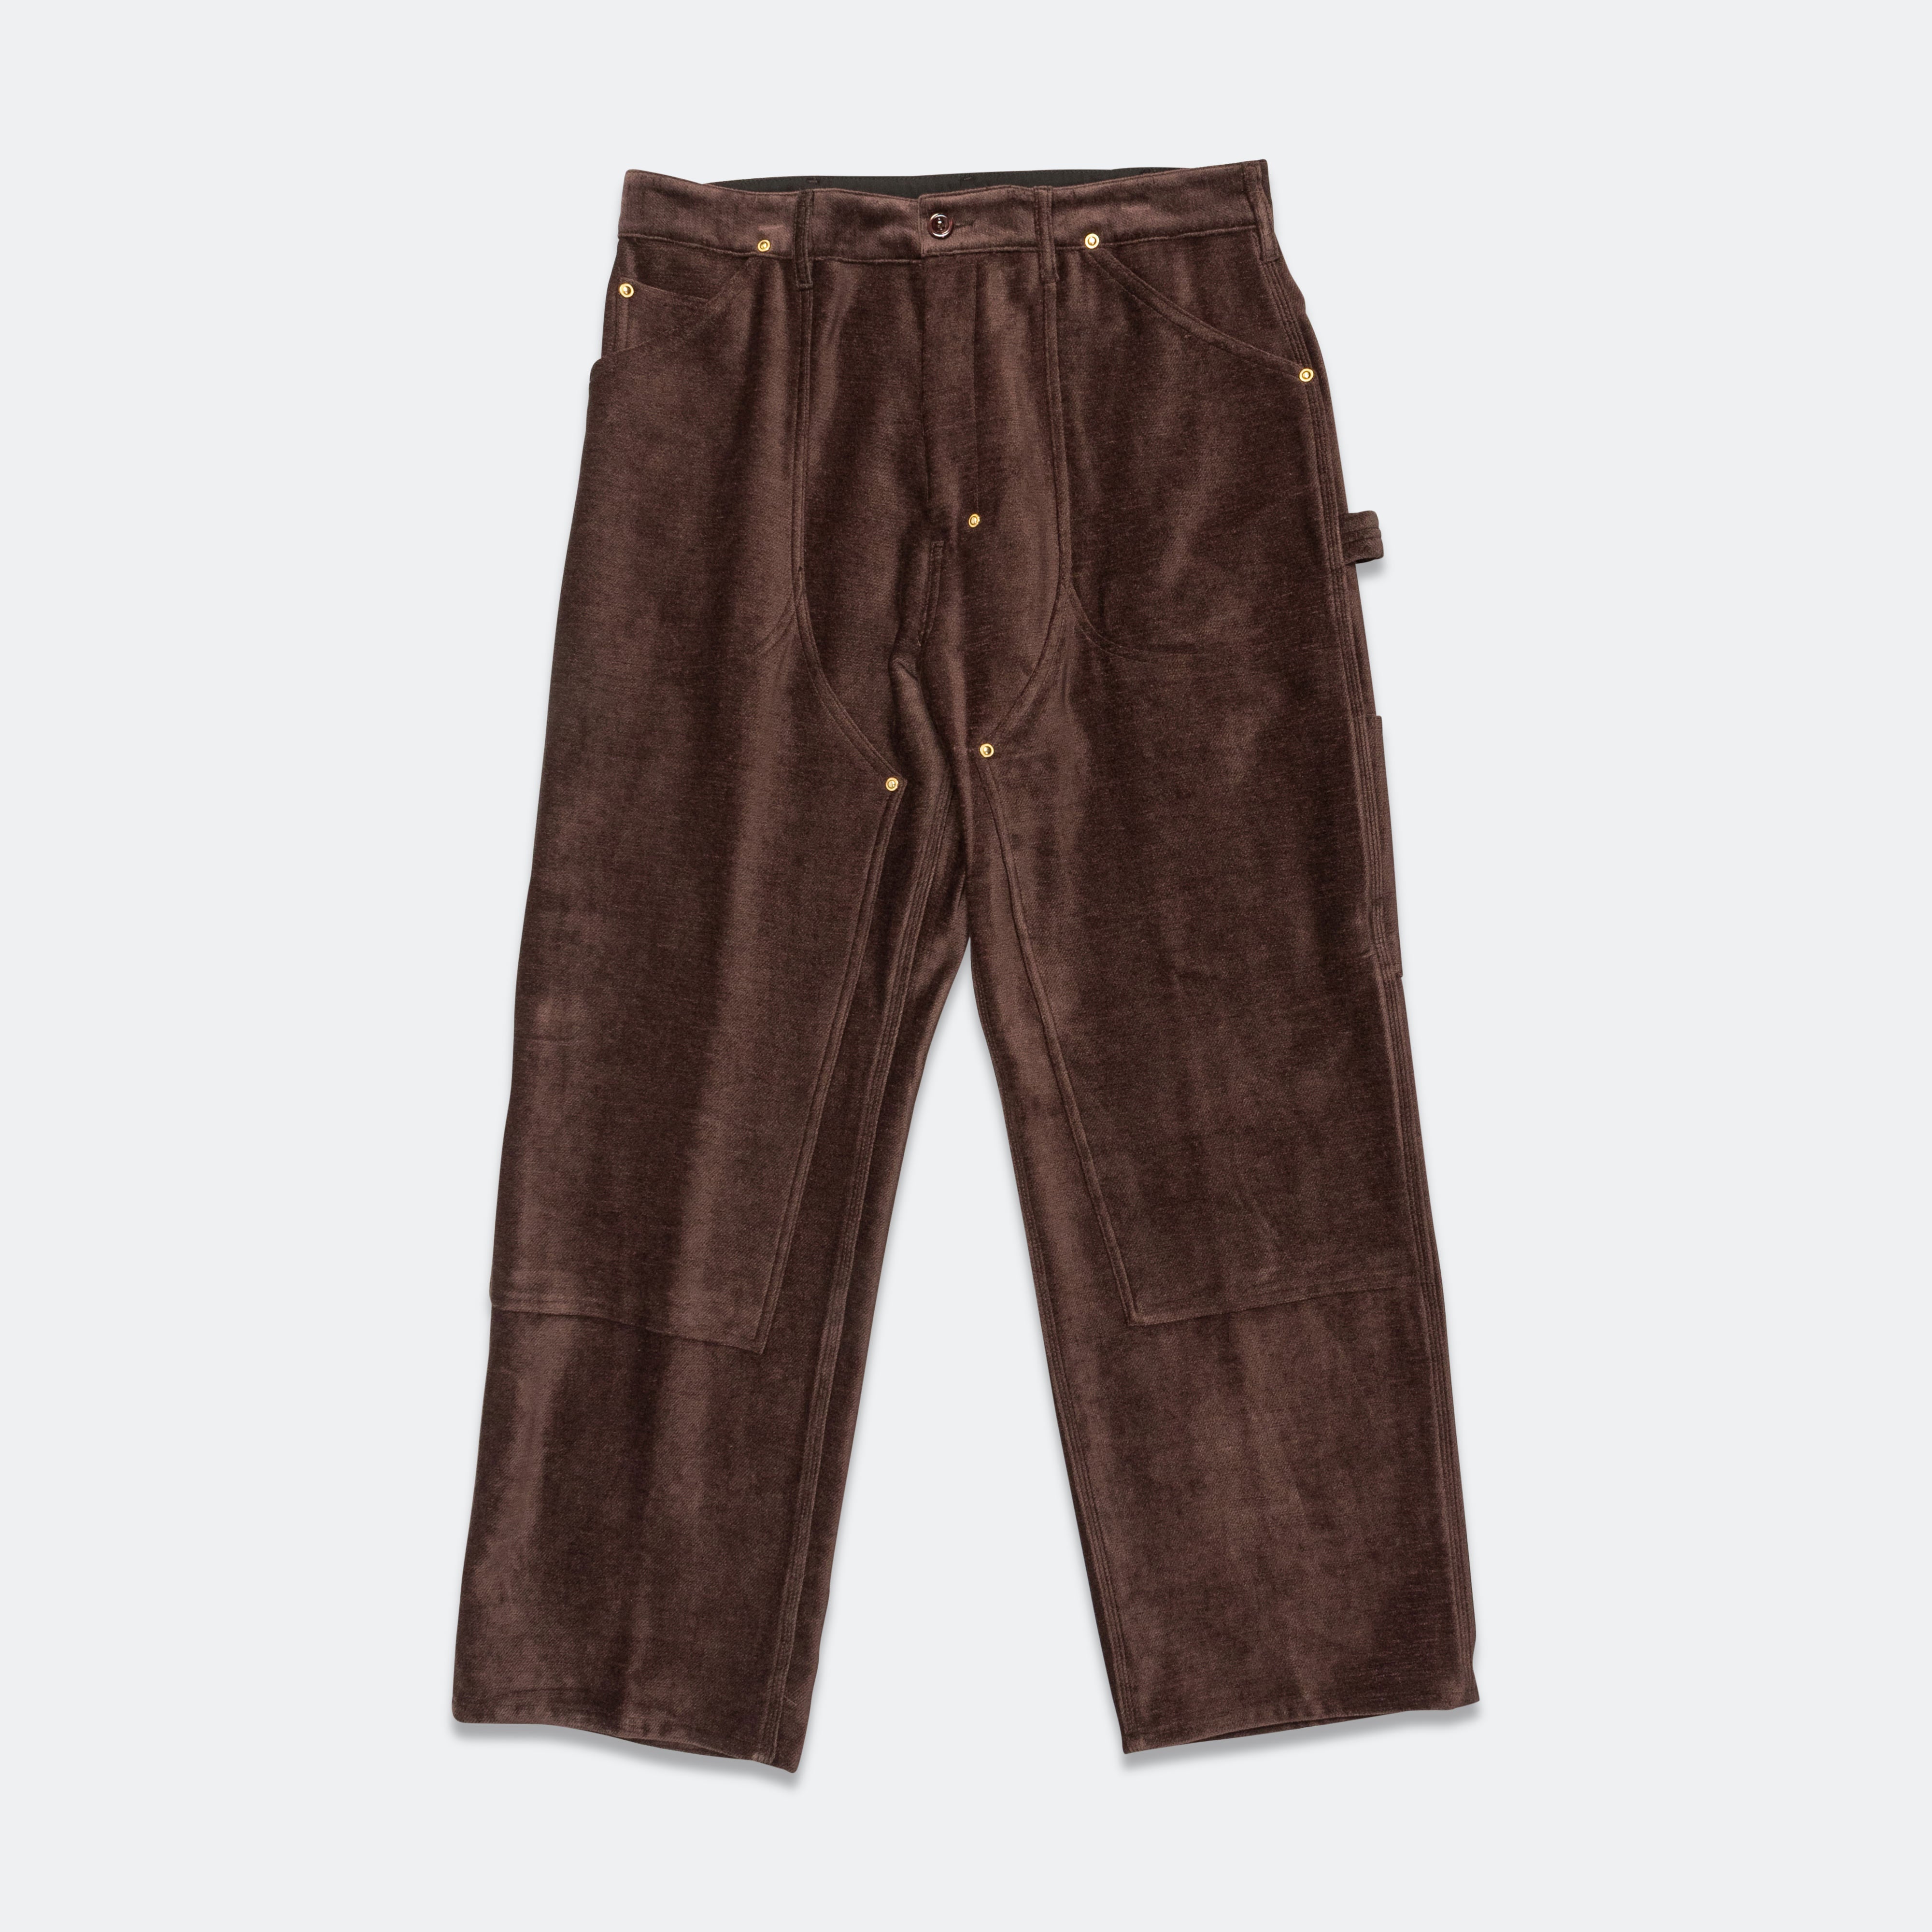 Buy SKENJEL Men's Casual Cotton Loose Denim Cargo Pants (30, Beige) at  Amazon.in